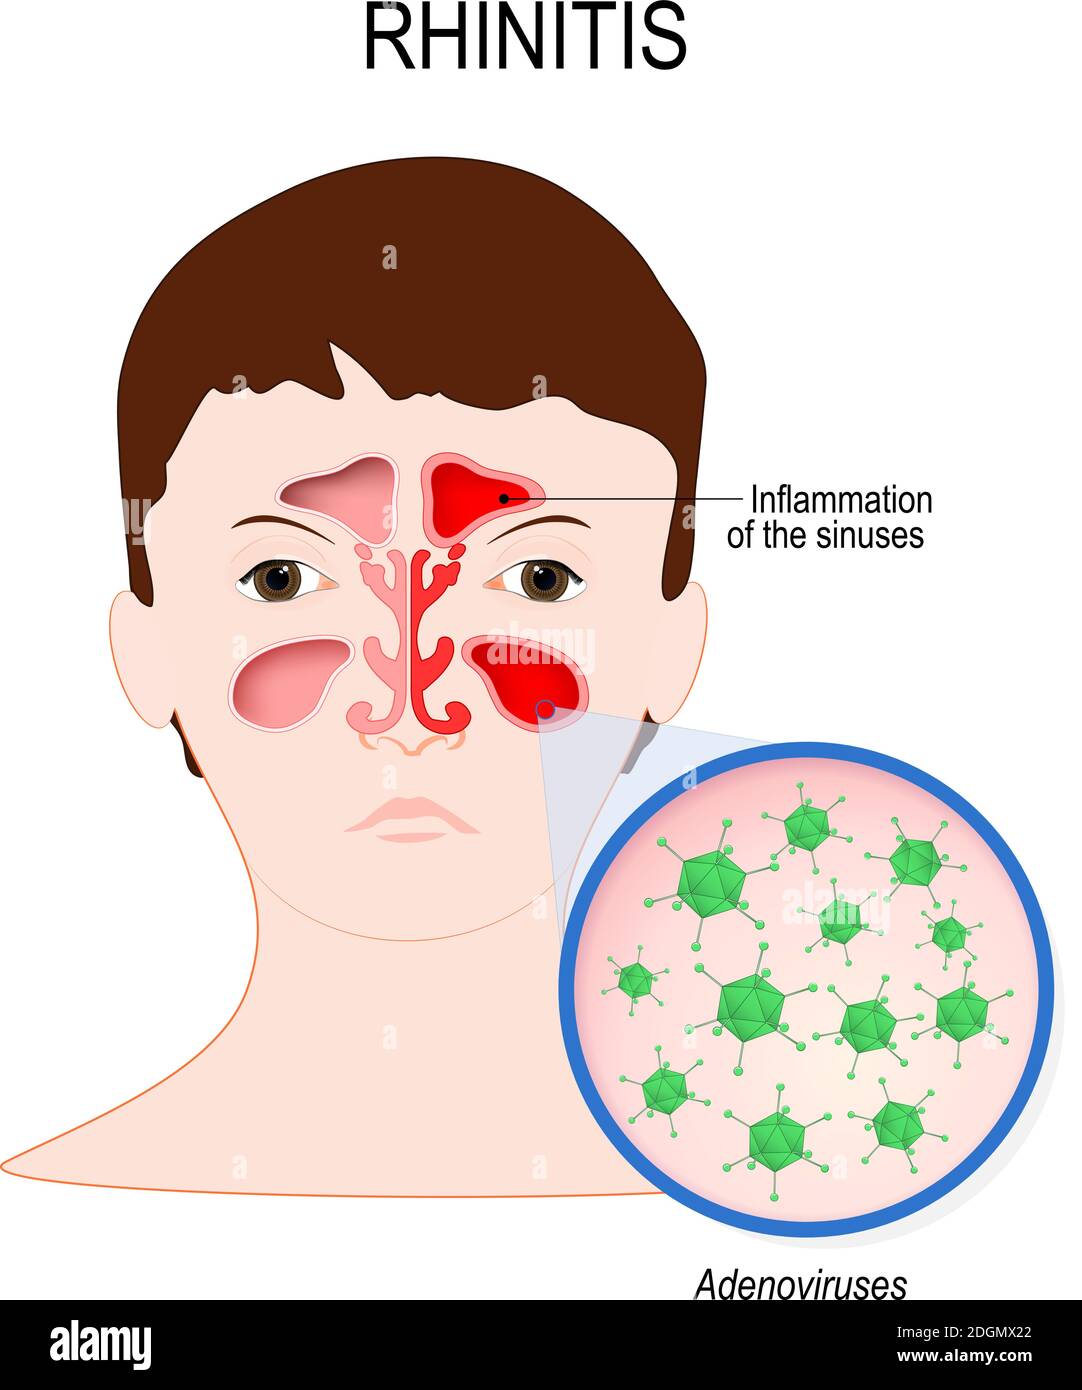 Virale Sinusitis (Rhinitis) durch Adenovirus-Infektion verursacht. Gesicht mit Nasenhöhle und Nahaufnahme Virusinfektion, die diese Krankheit verursacht Stock Vektor